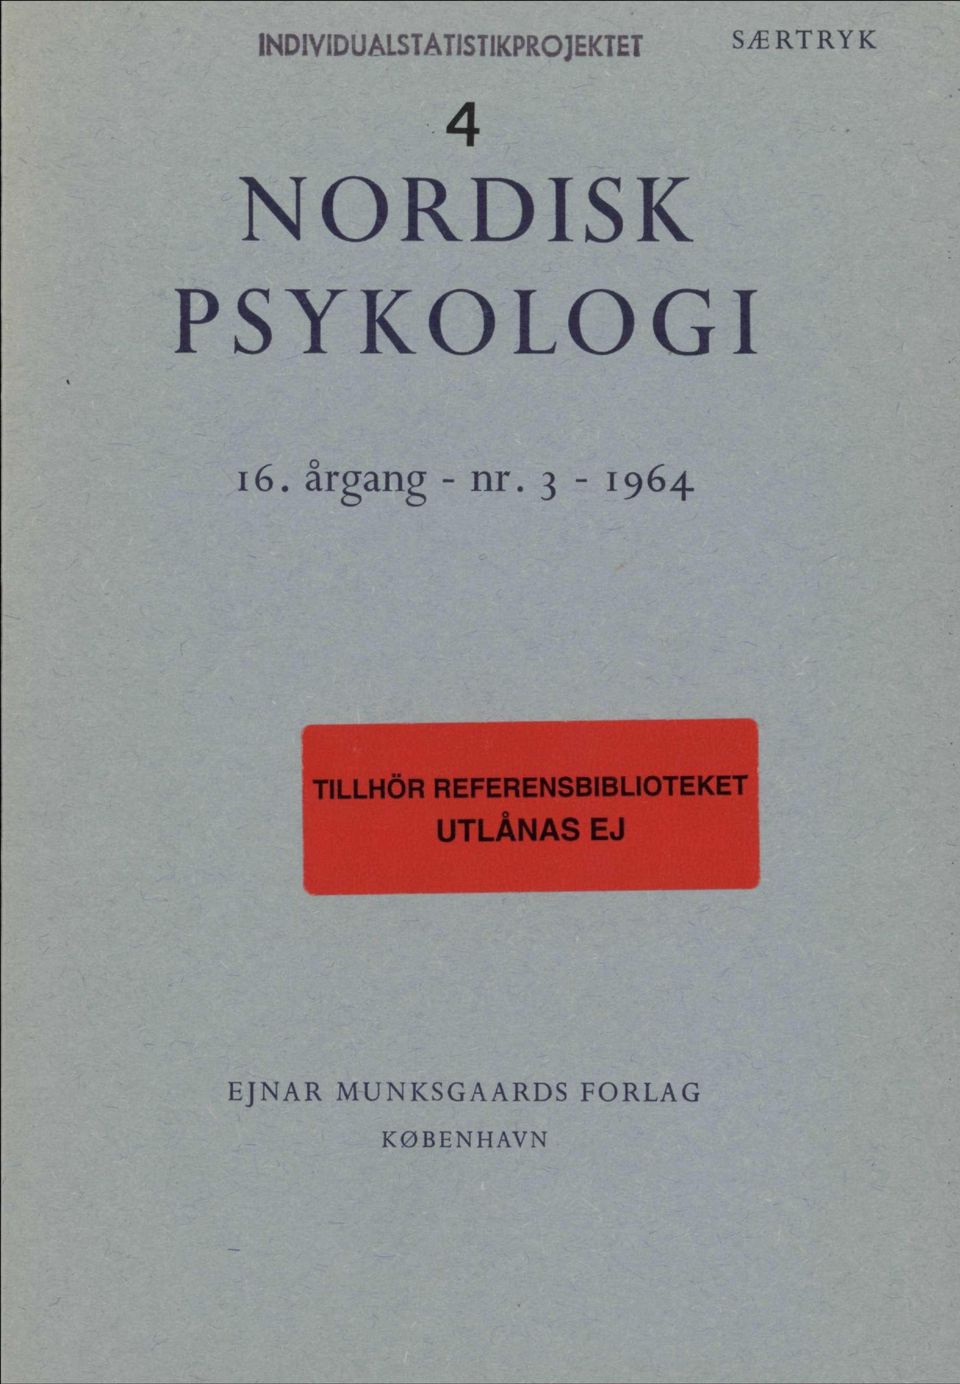 3-1964 TILLHÖR REFERENSBIBLIOTEKET